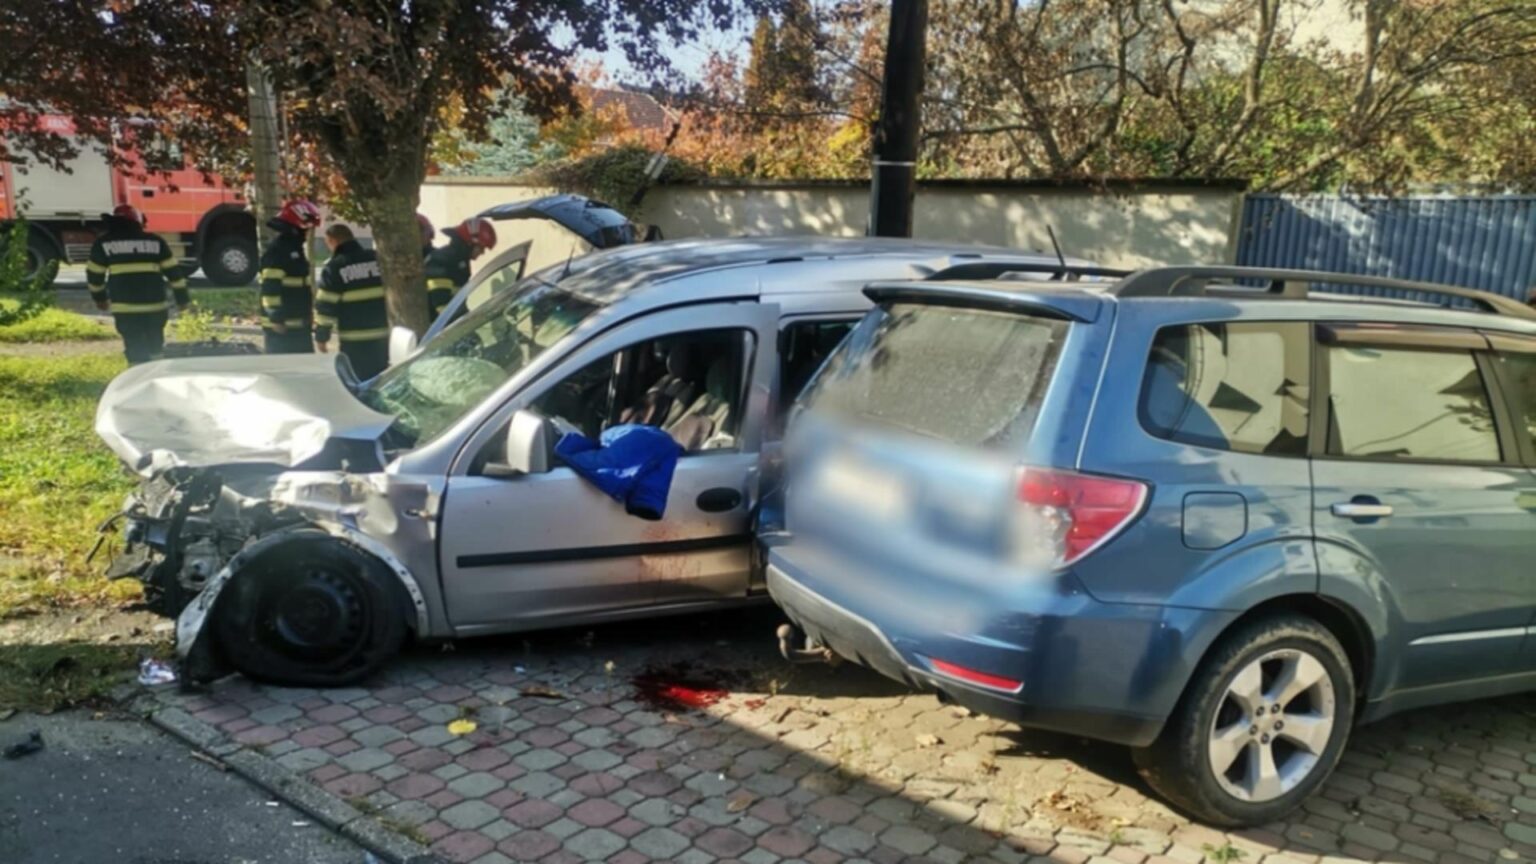 Carambol cu 3 mașini în Arad. Două persoane au fost rănite și transportate la spital